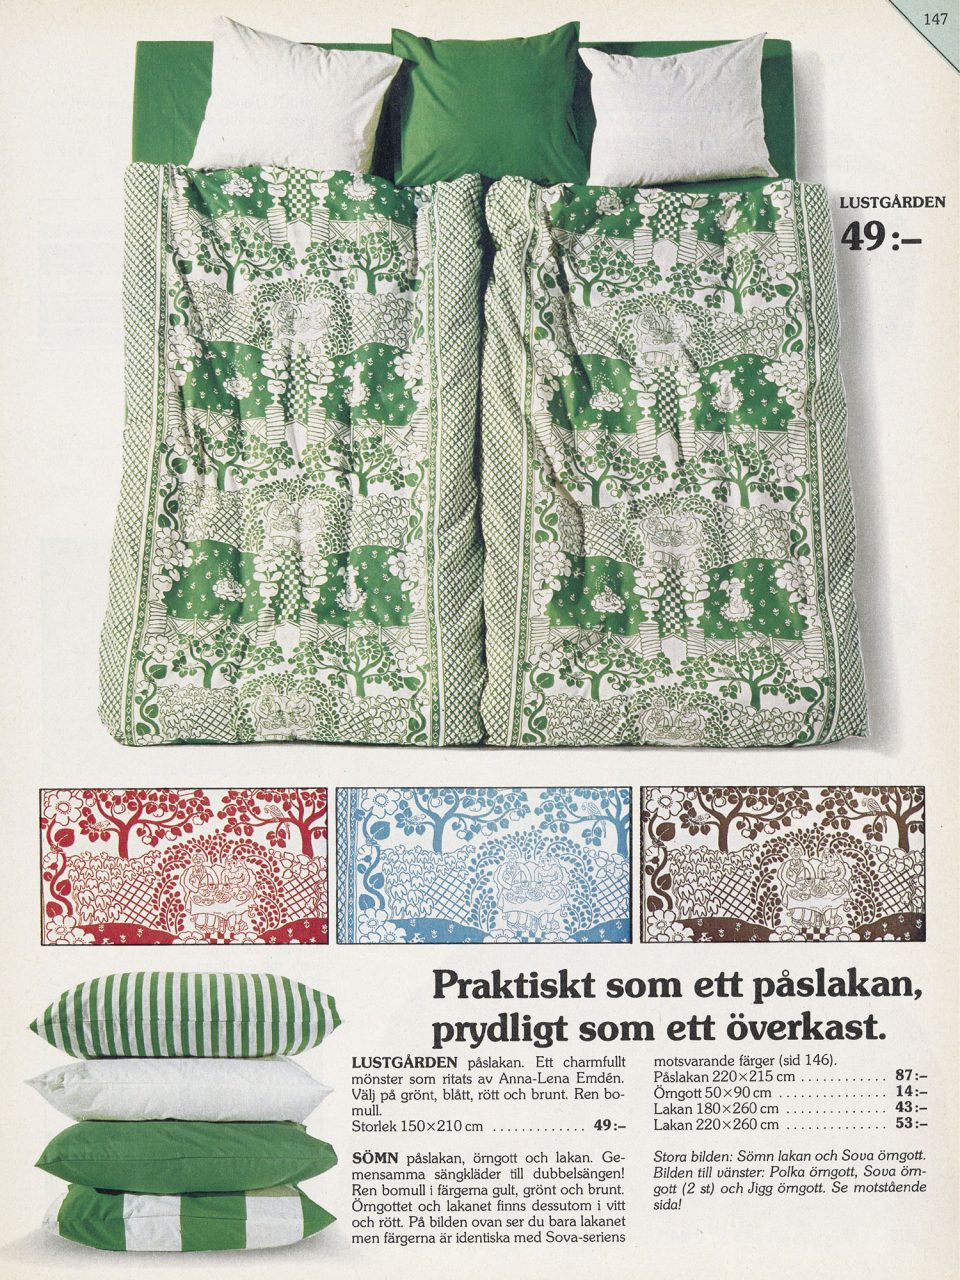 Sida i IKEA katalogen 1978, sängar bäddade med påslakan LUSTGÅRDEN i grönt, samt bilder av mönstret i brunt, rött och blått.